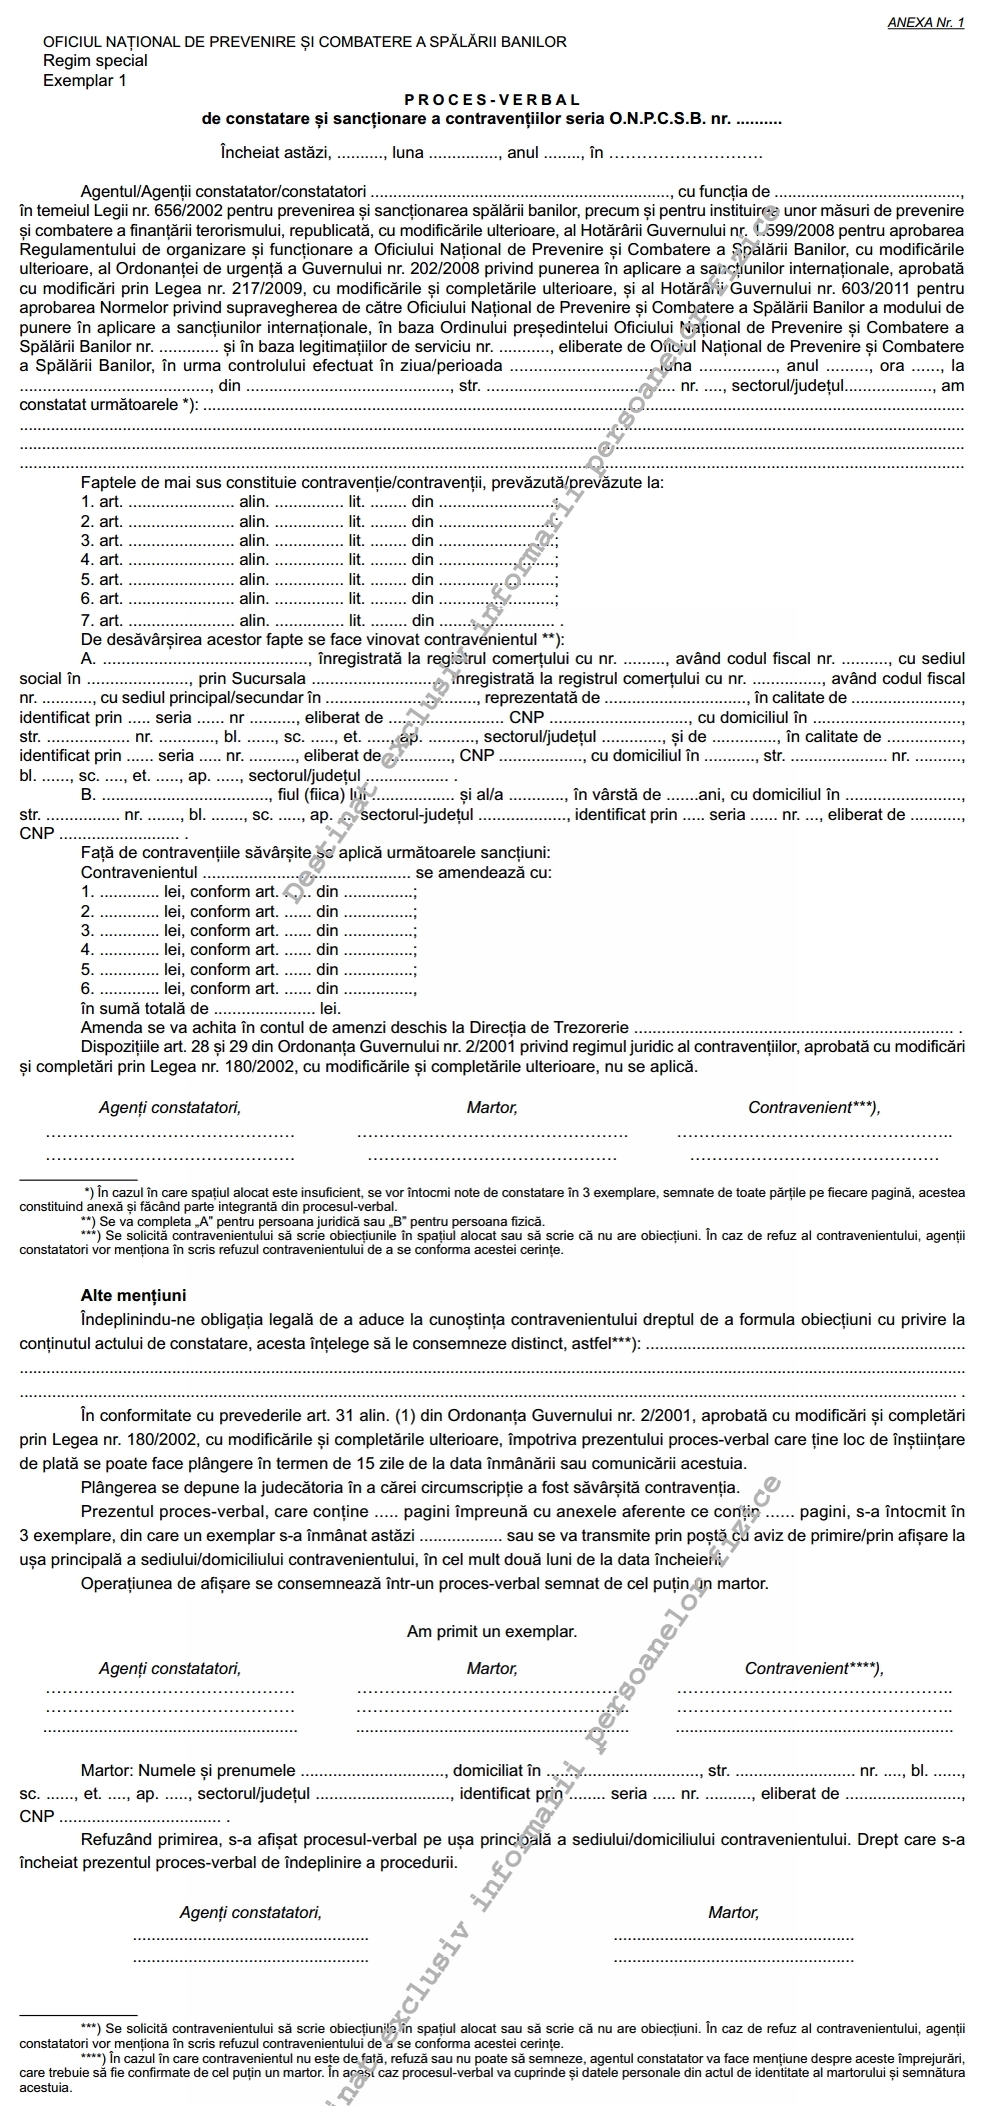 Ordinul Onpcsb Nr 71 2015 Aprobarea Formularului Tipizat Proces Verbal De Constatare Si Sanctionare A Contraventiilor